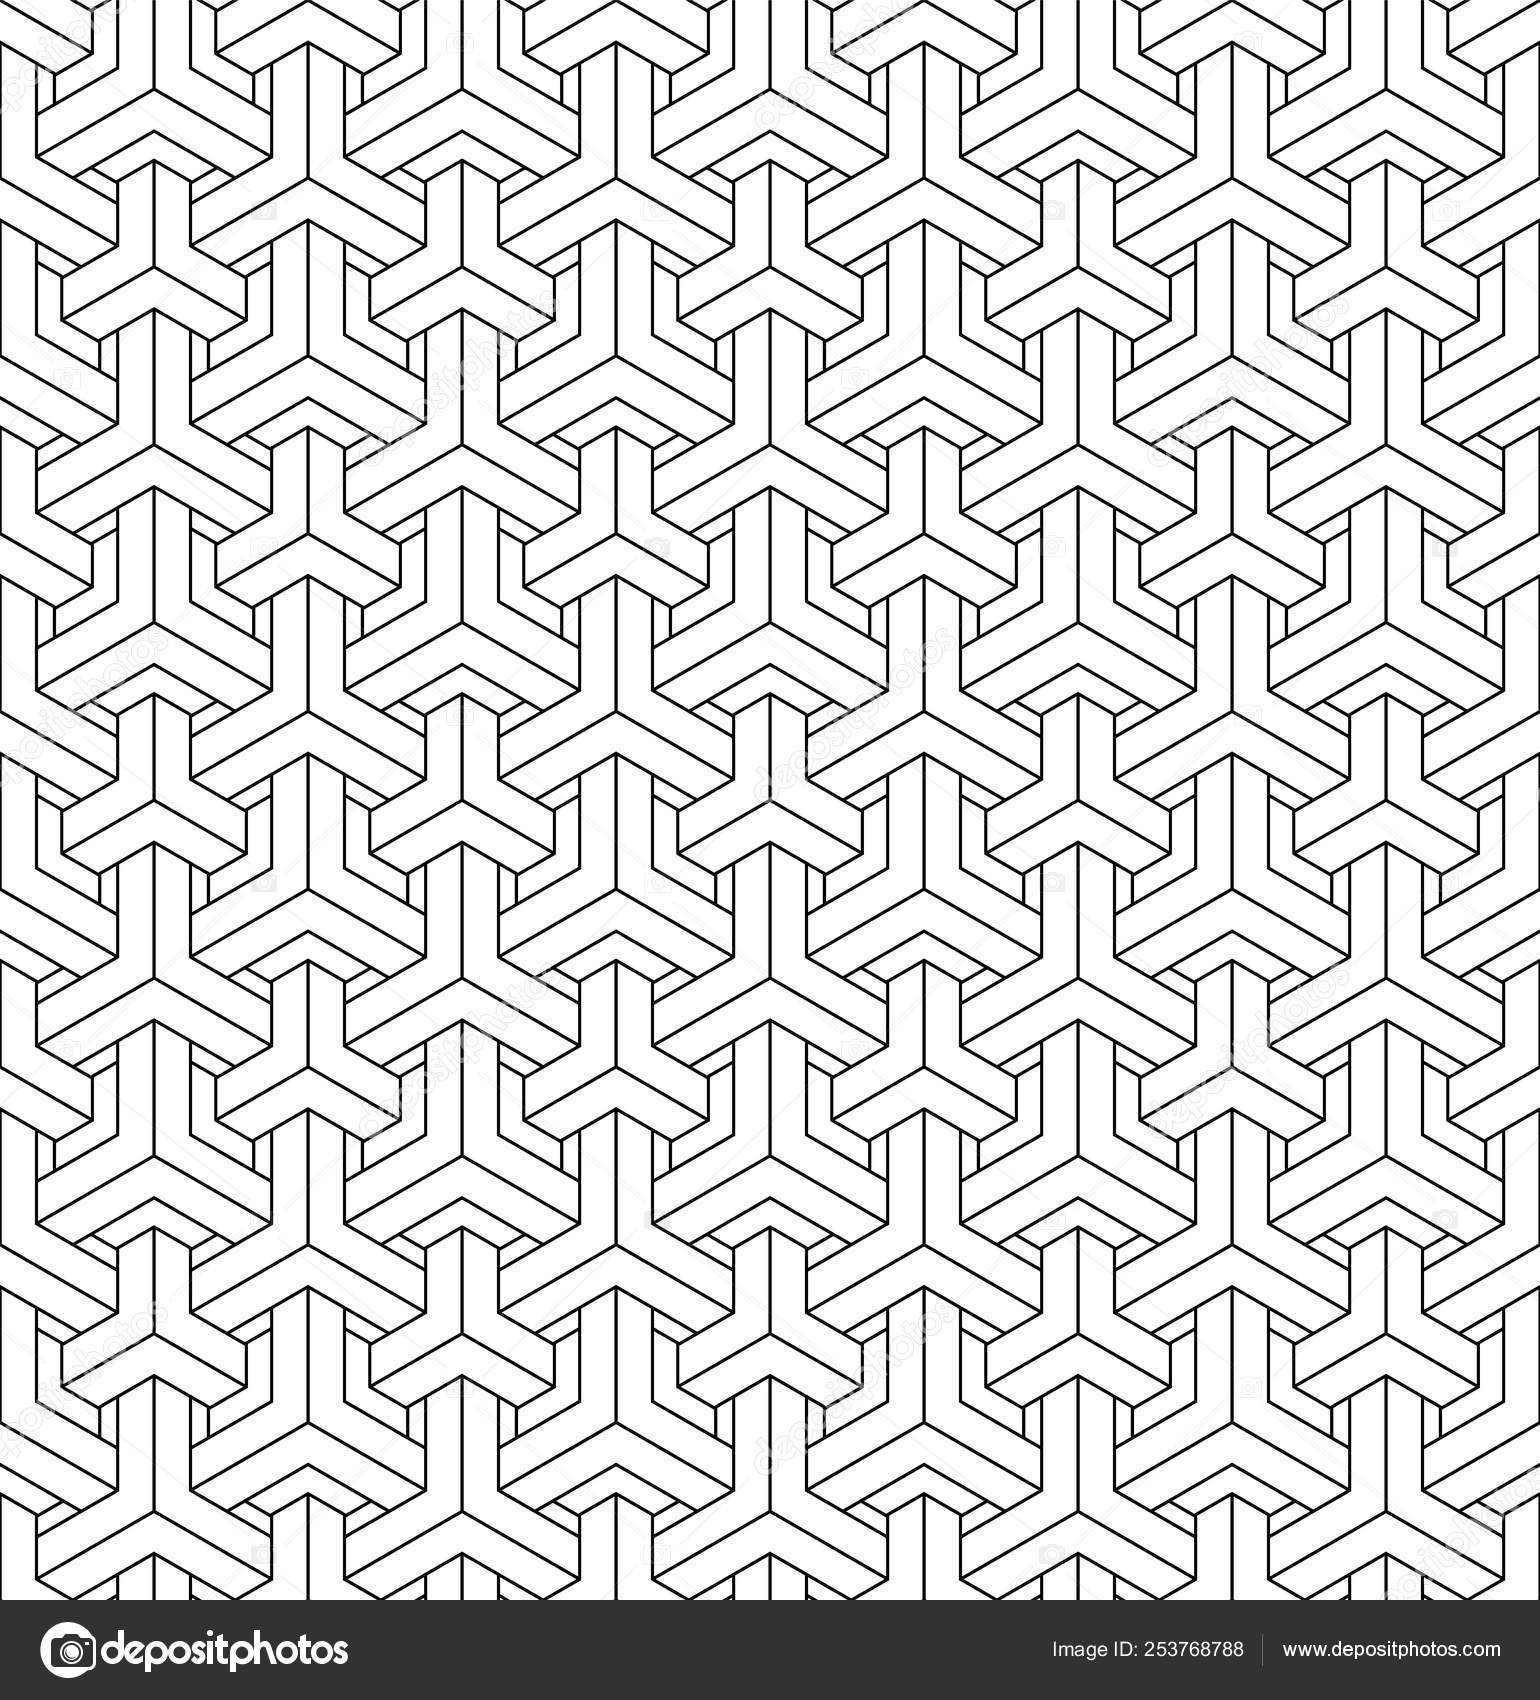 Seamless geometric pattern based on japanese pattern kumiko. — Free ...